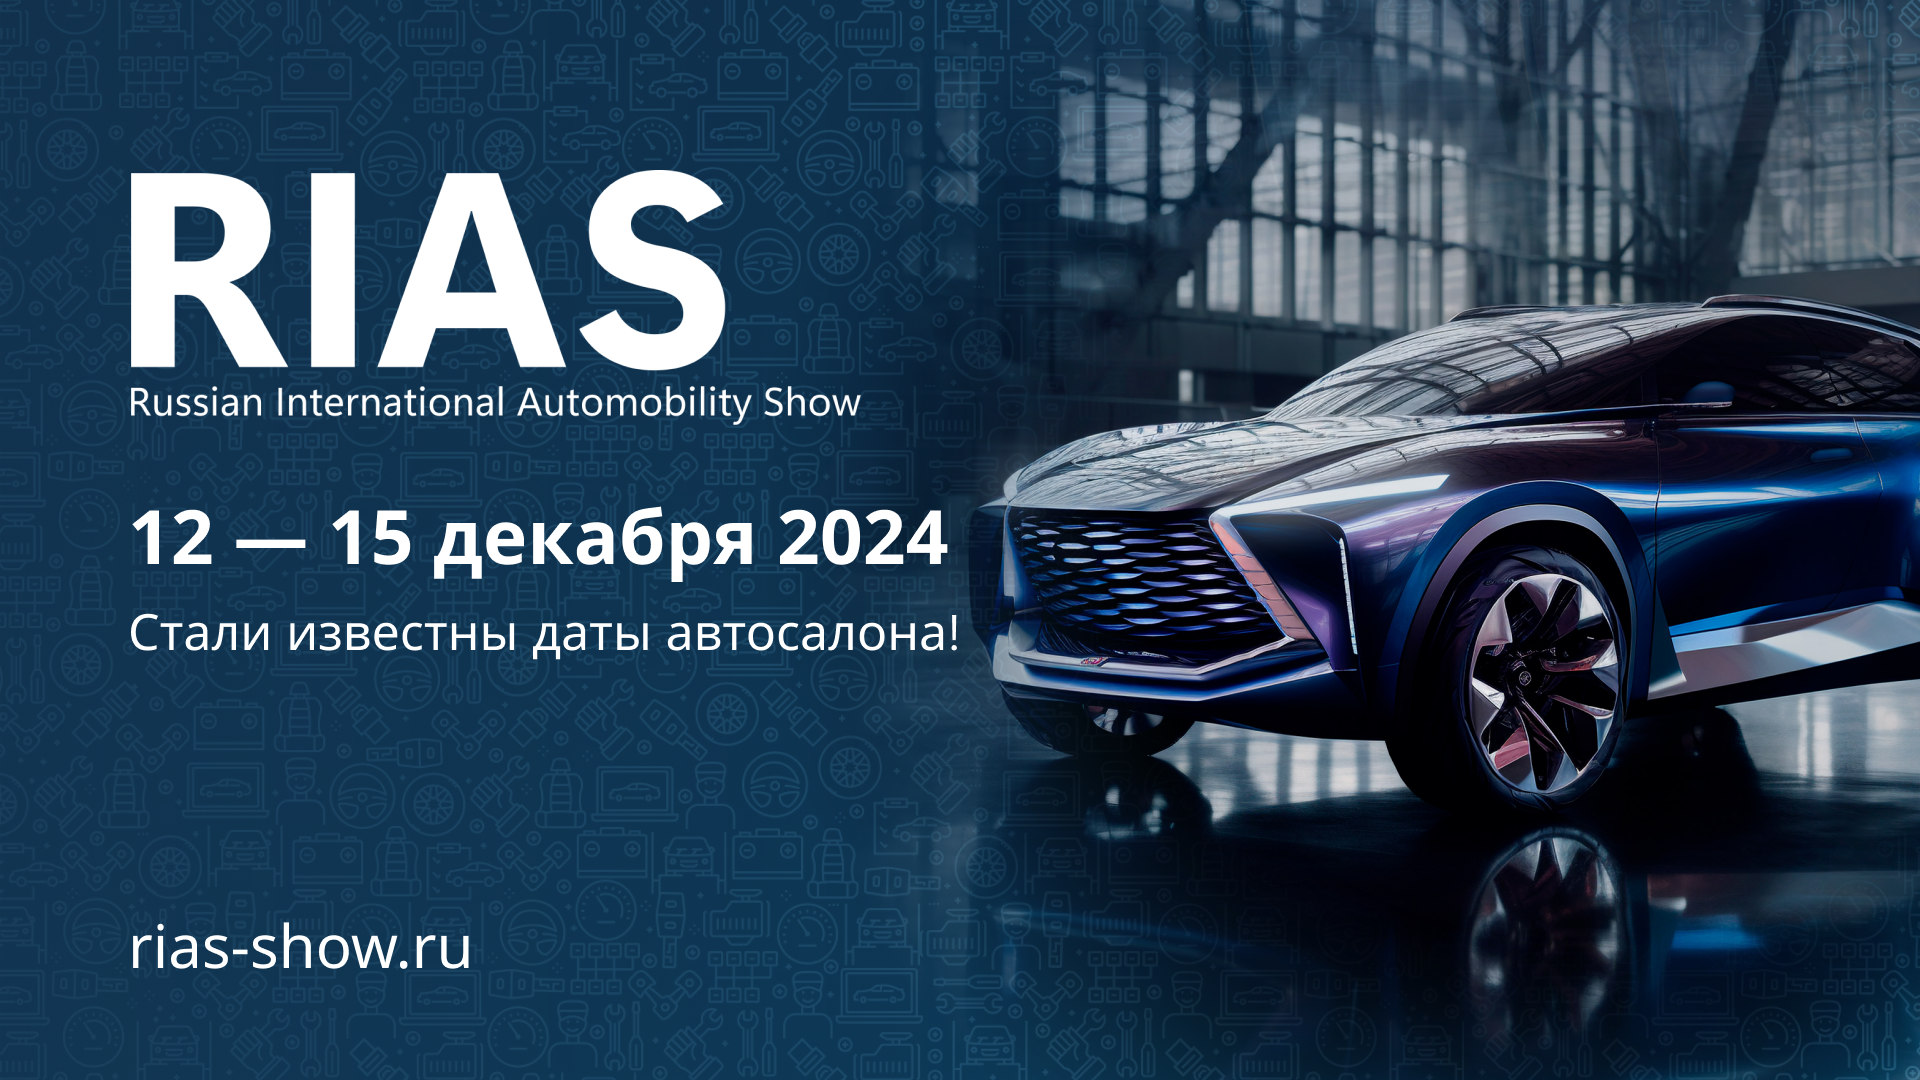 Российский Международный Автомобильный салон пройдет в декабре 2024 года 